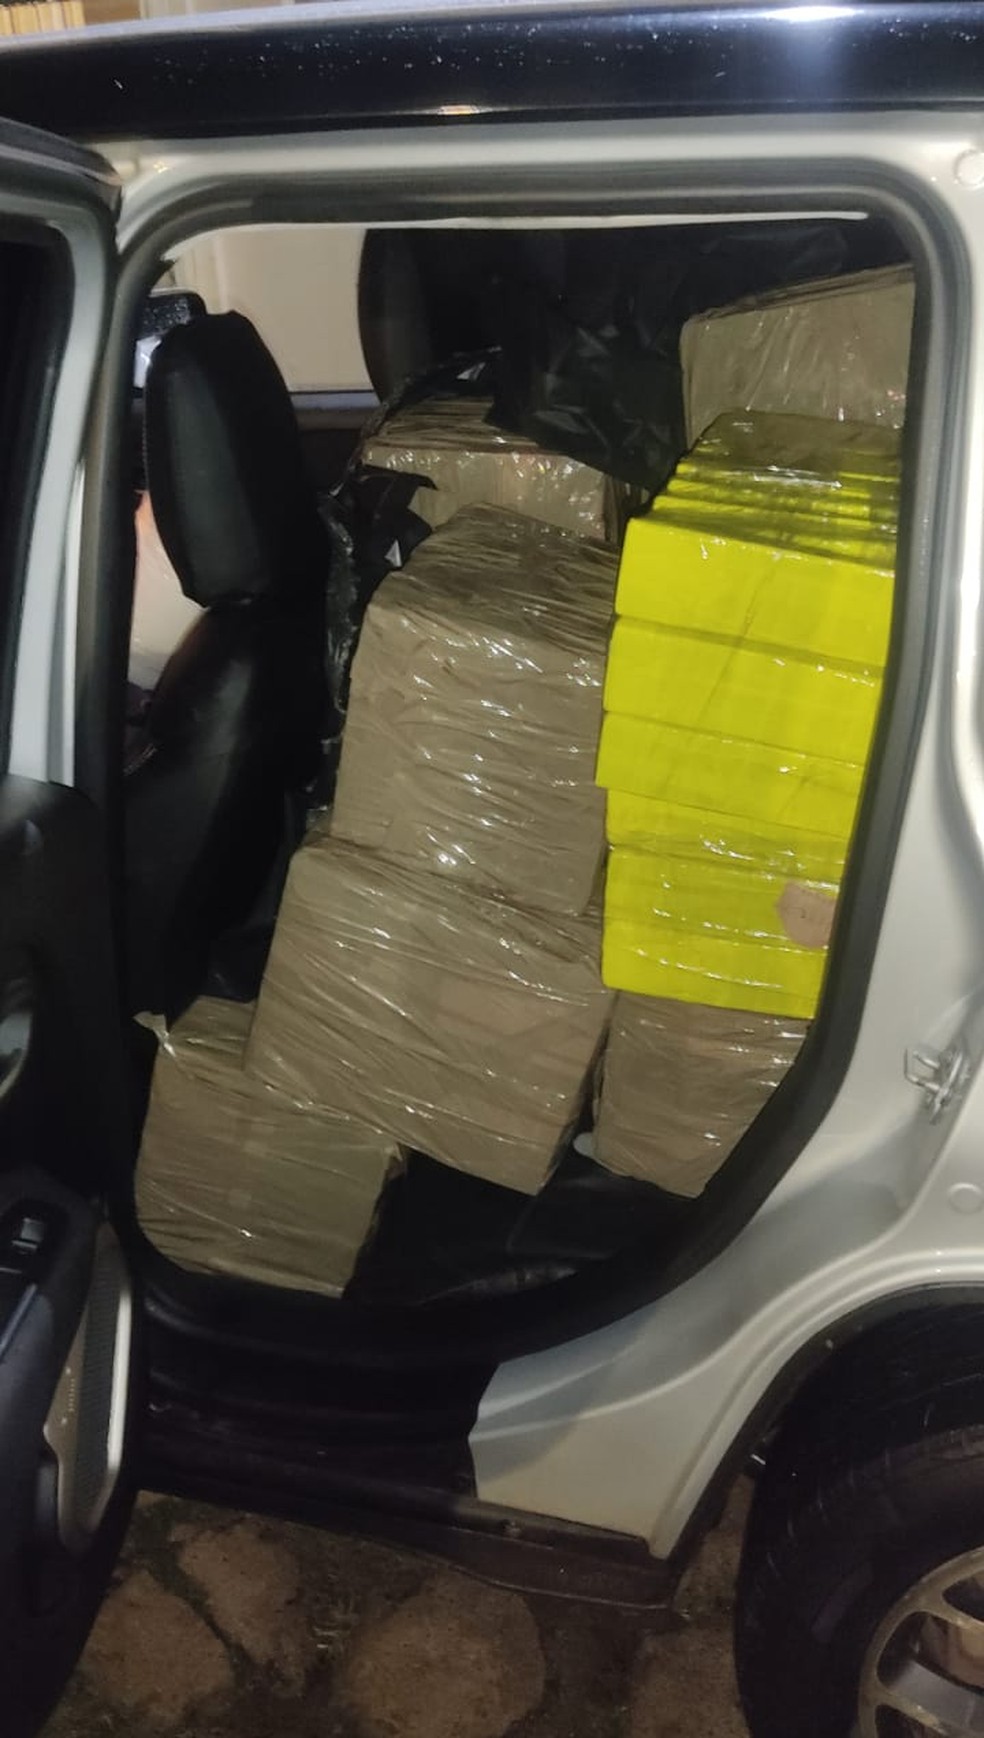 Carga de mais de 800 quilos de maconha foi apreendida dentro de veículo roubado em Pirapozinho (SP) — Foto: Polícia Militar